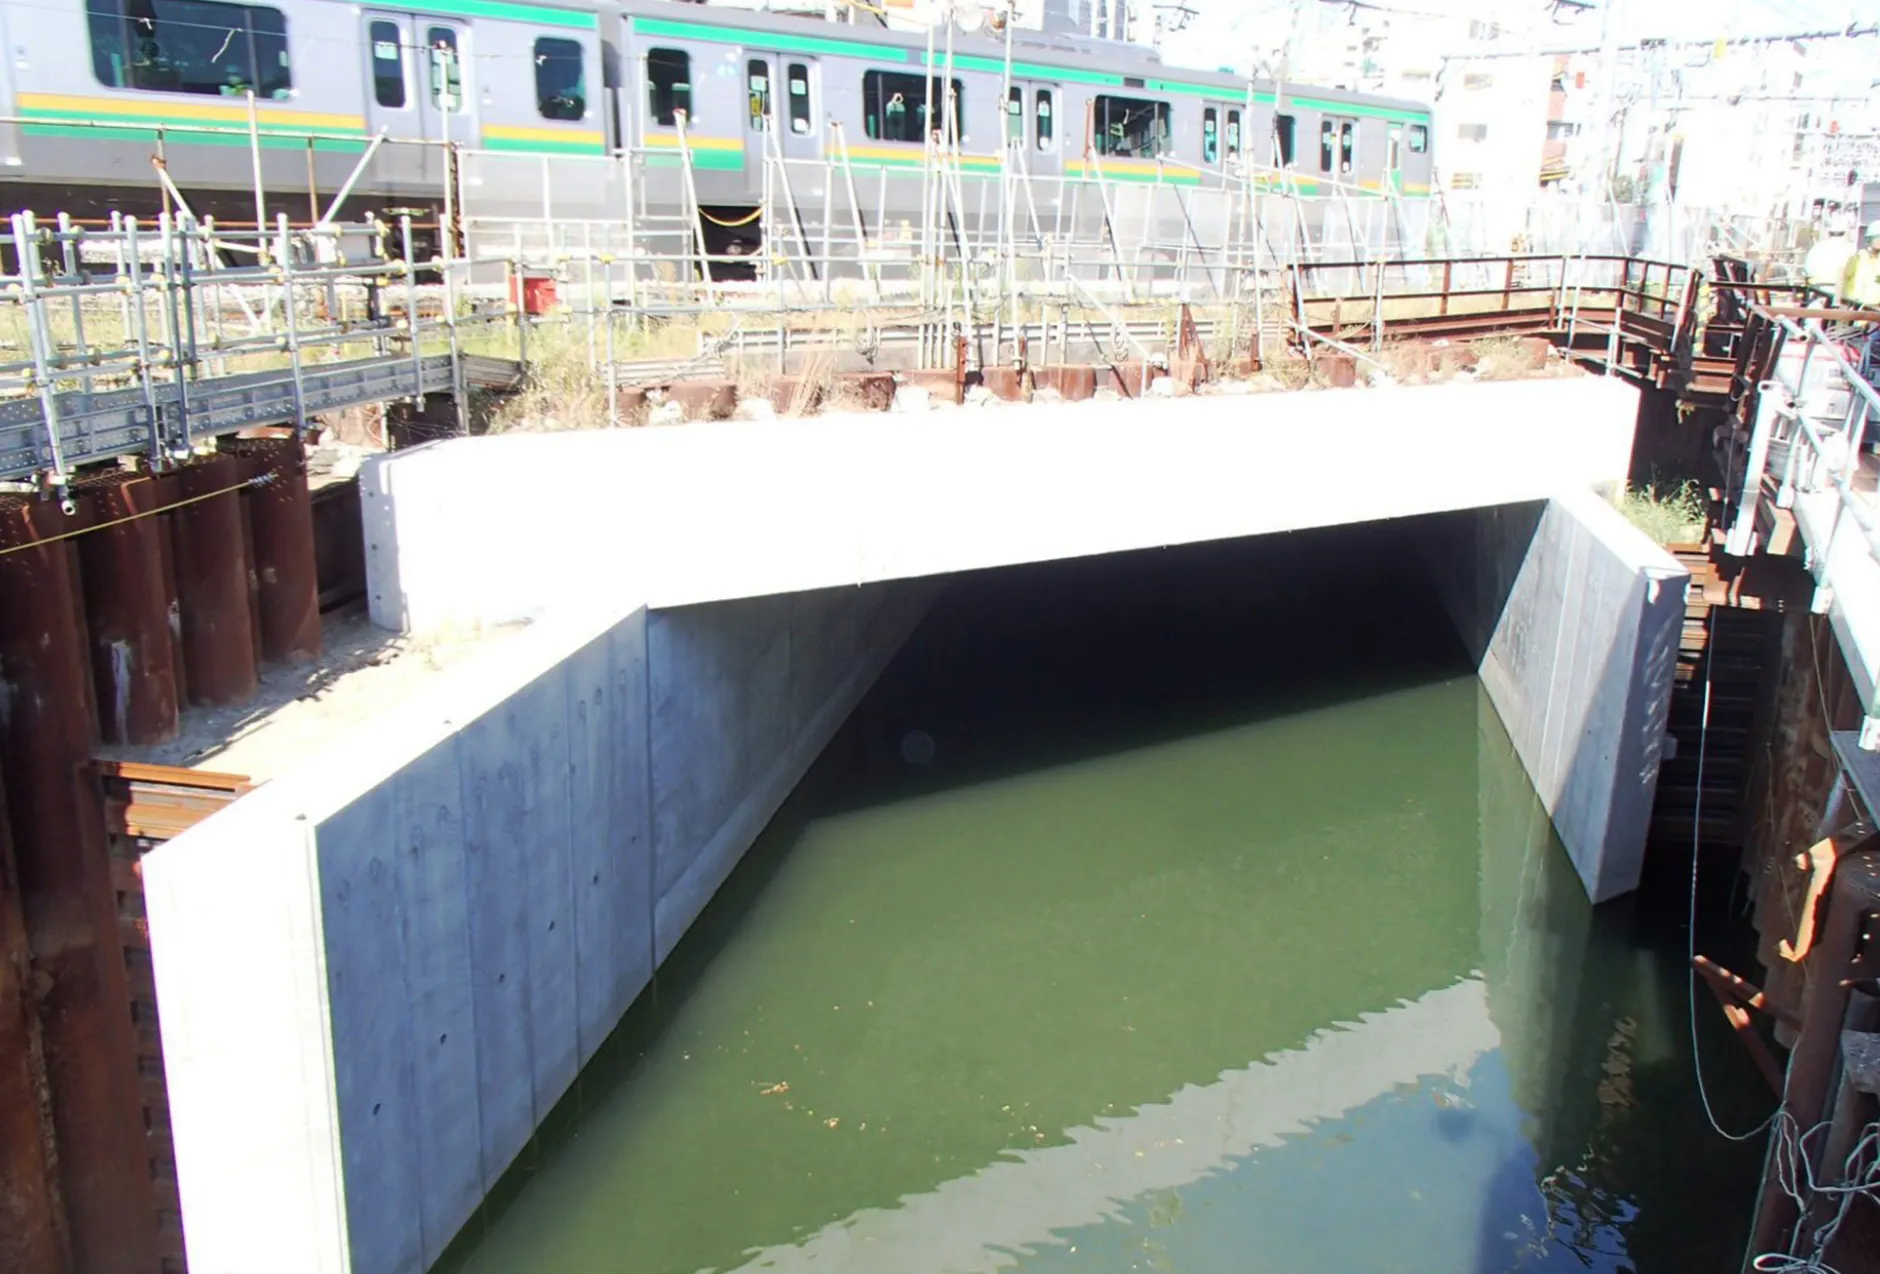 JR横須賀線 横浜・戸塚間岩間川本水路新設工事のサムネイル画像です